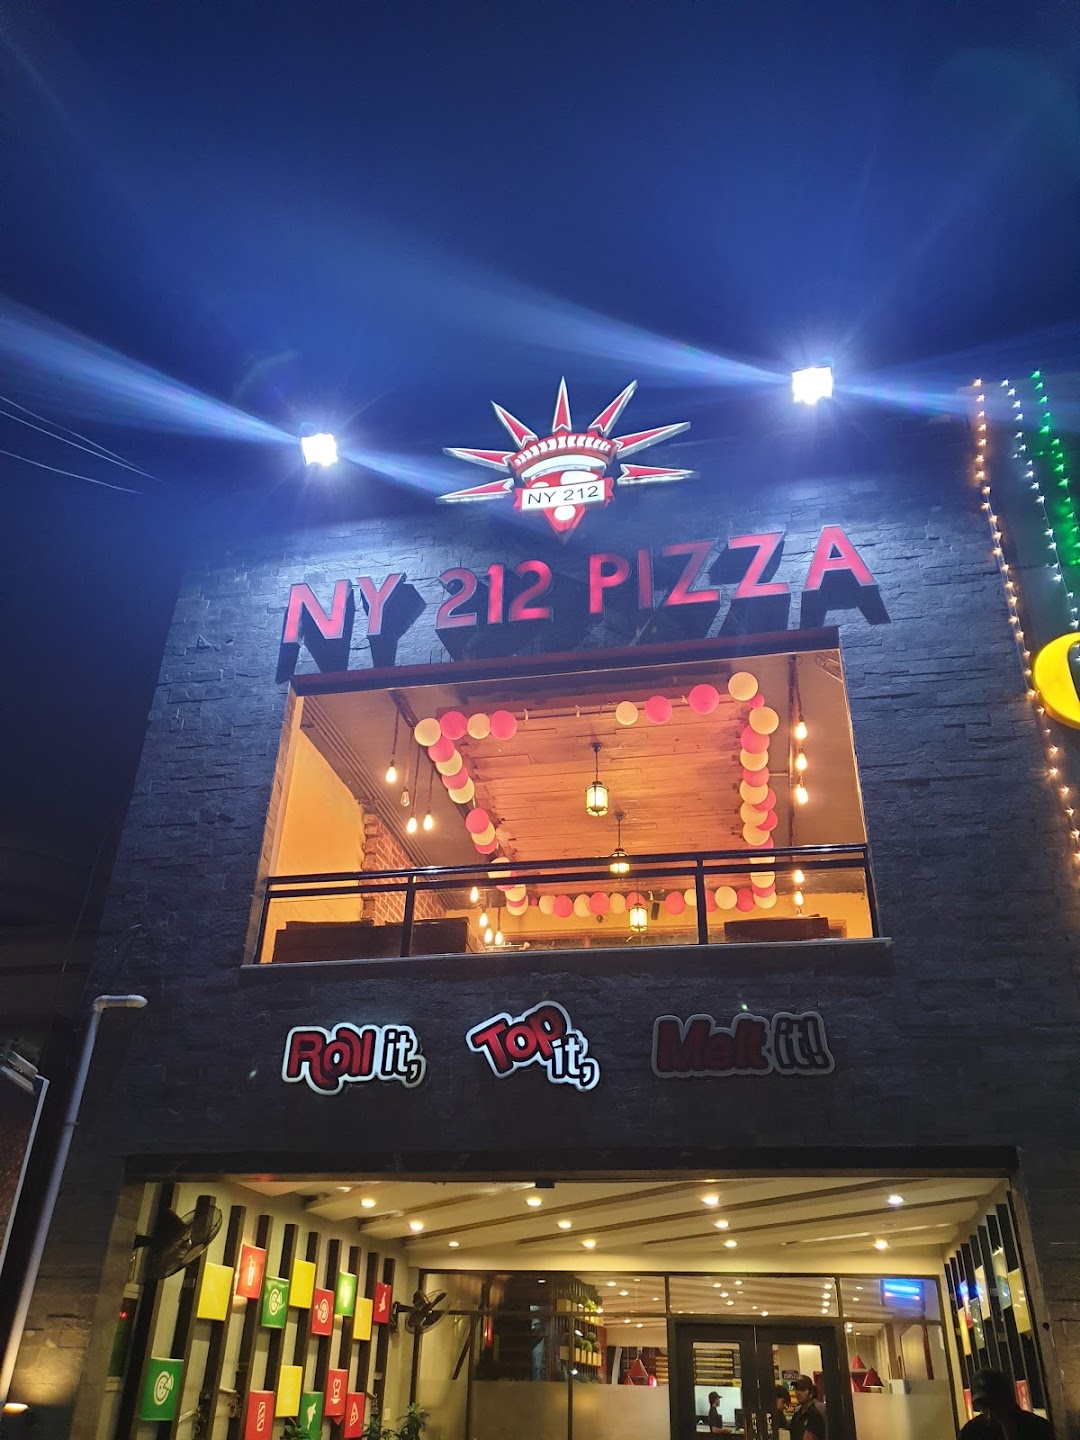 NY212 Pizza